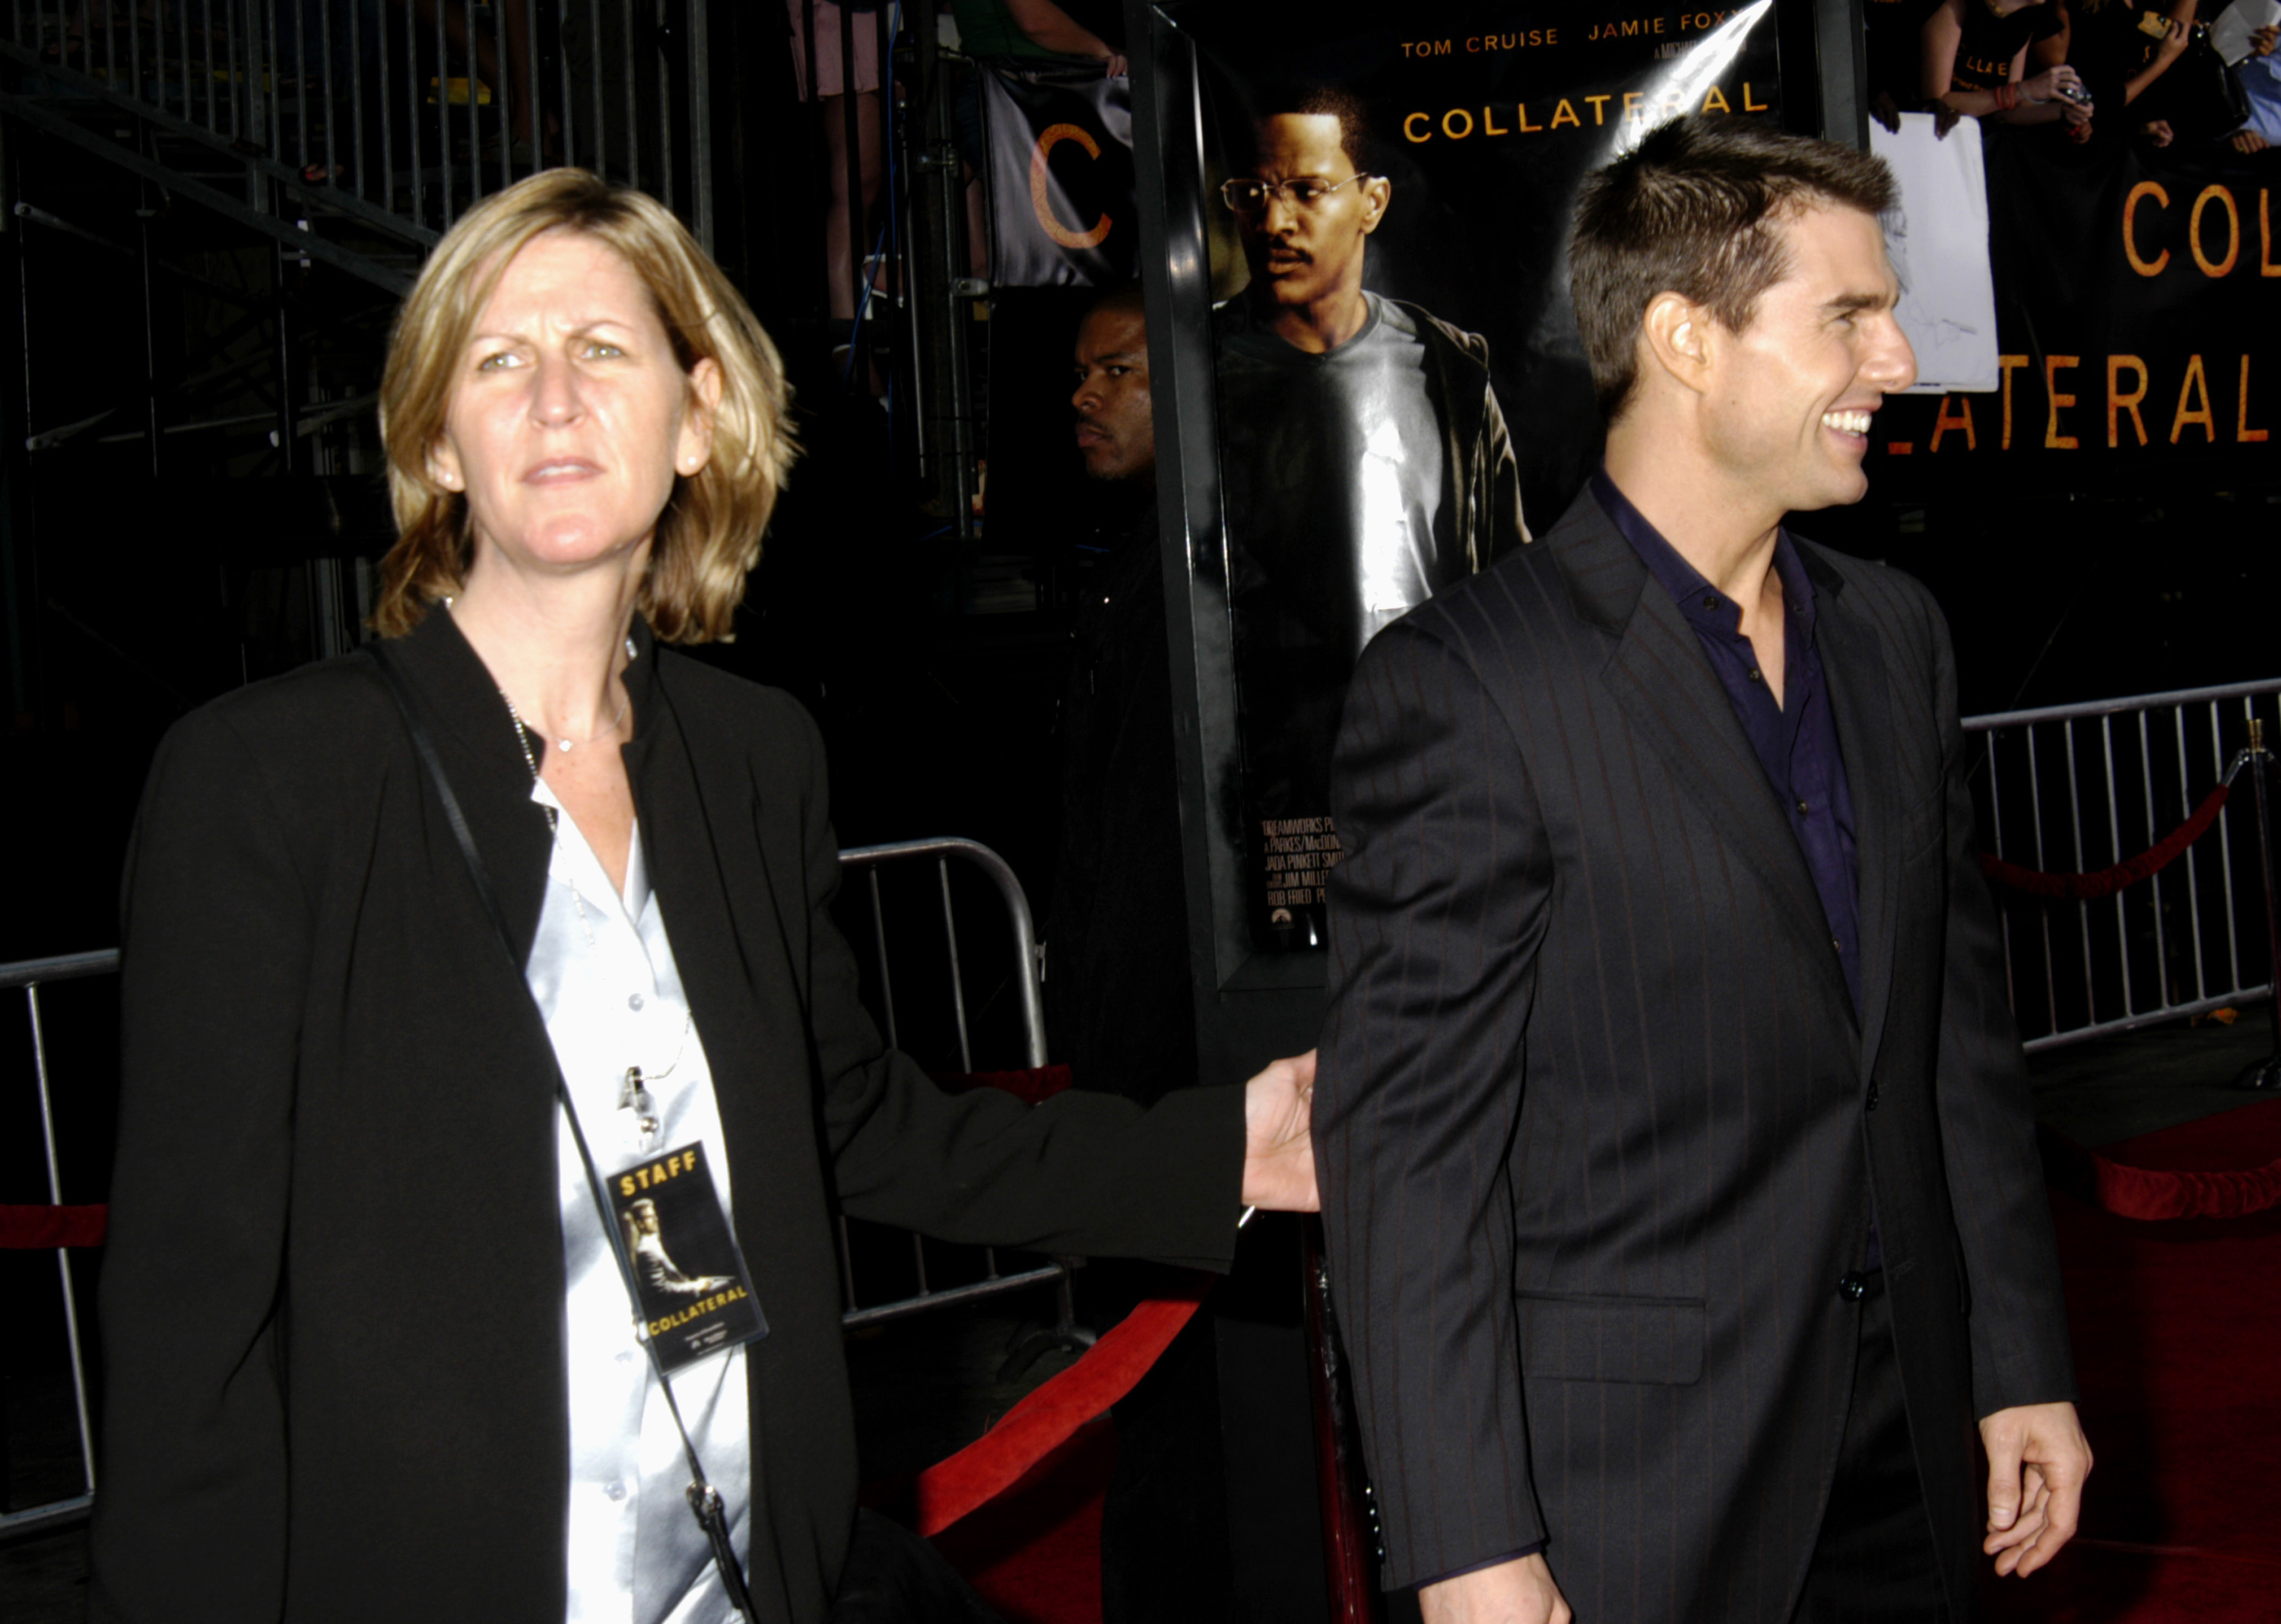 Lee Anne De Vett and Tom Cruise